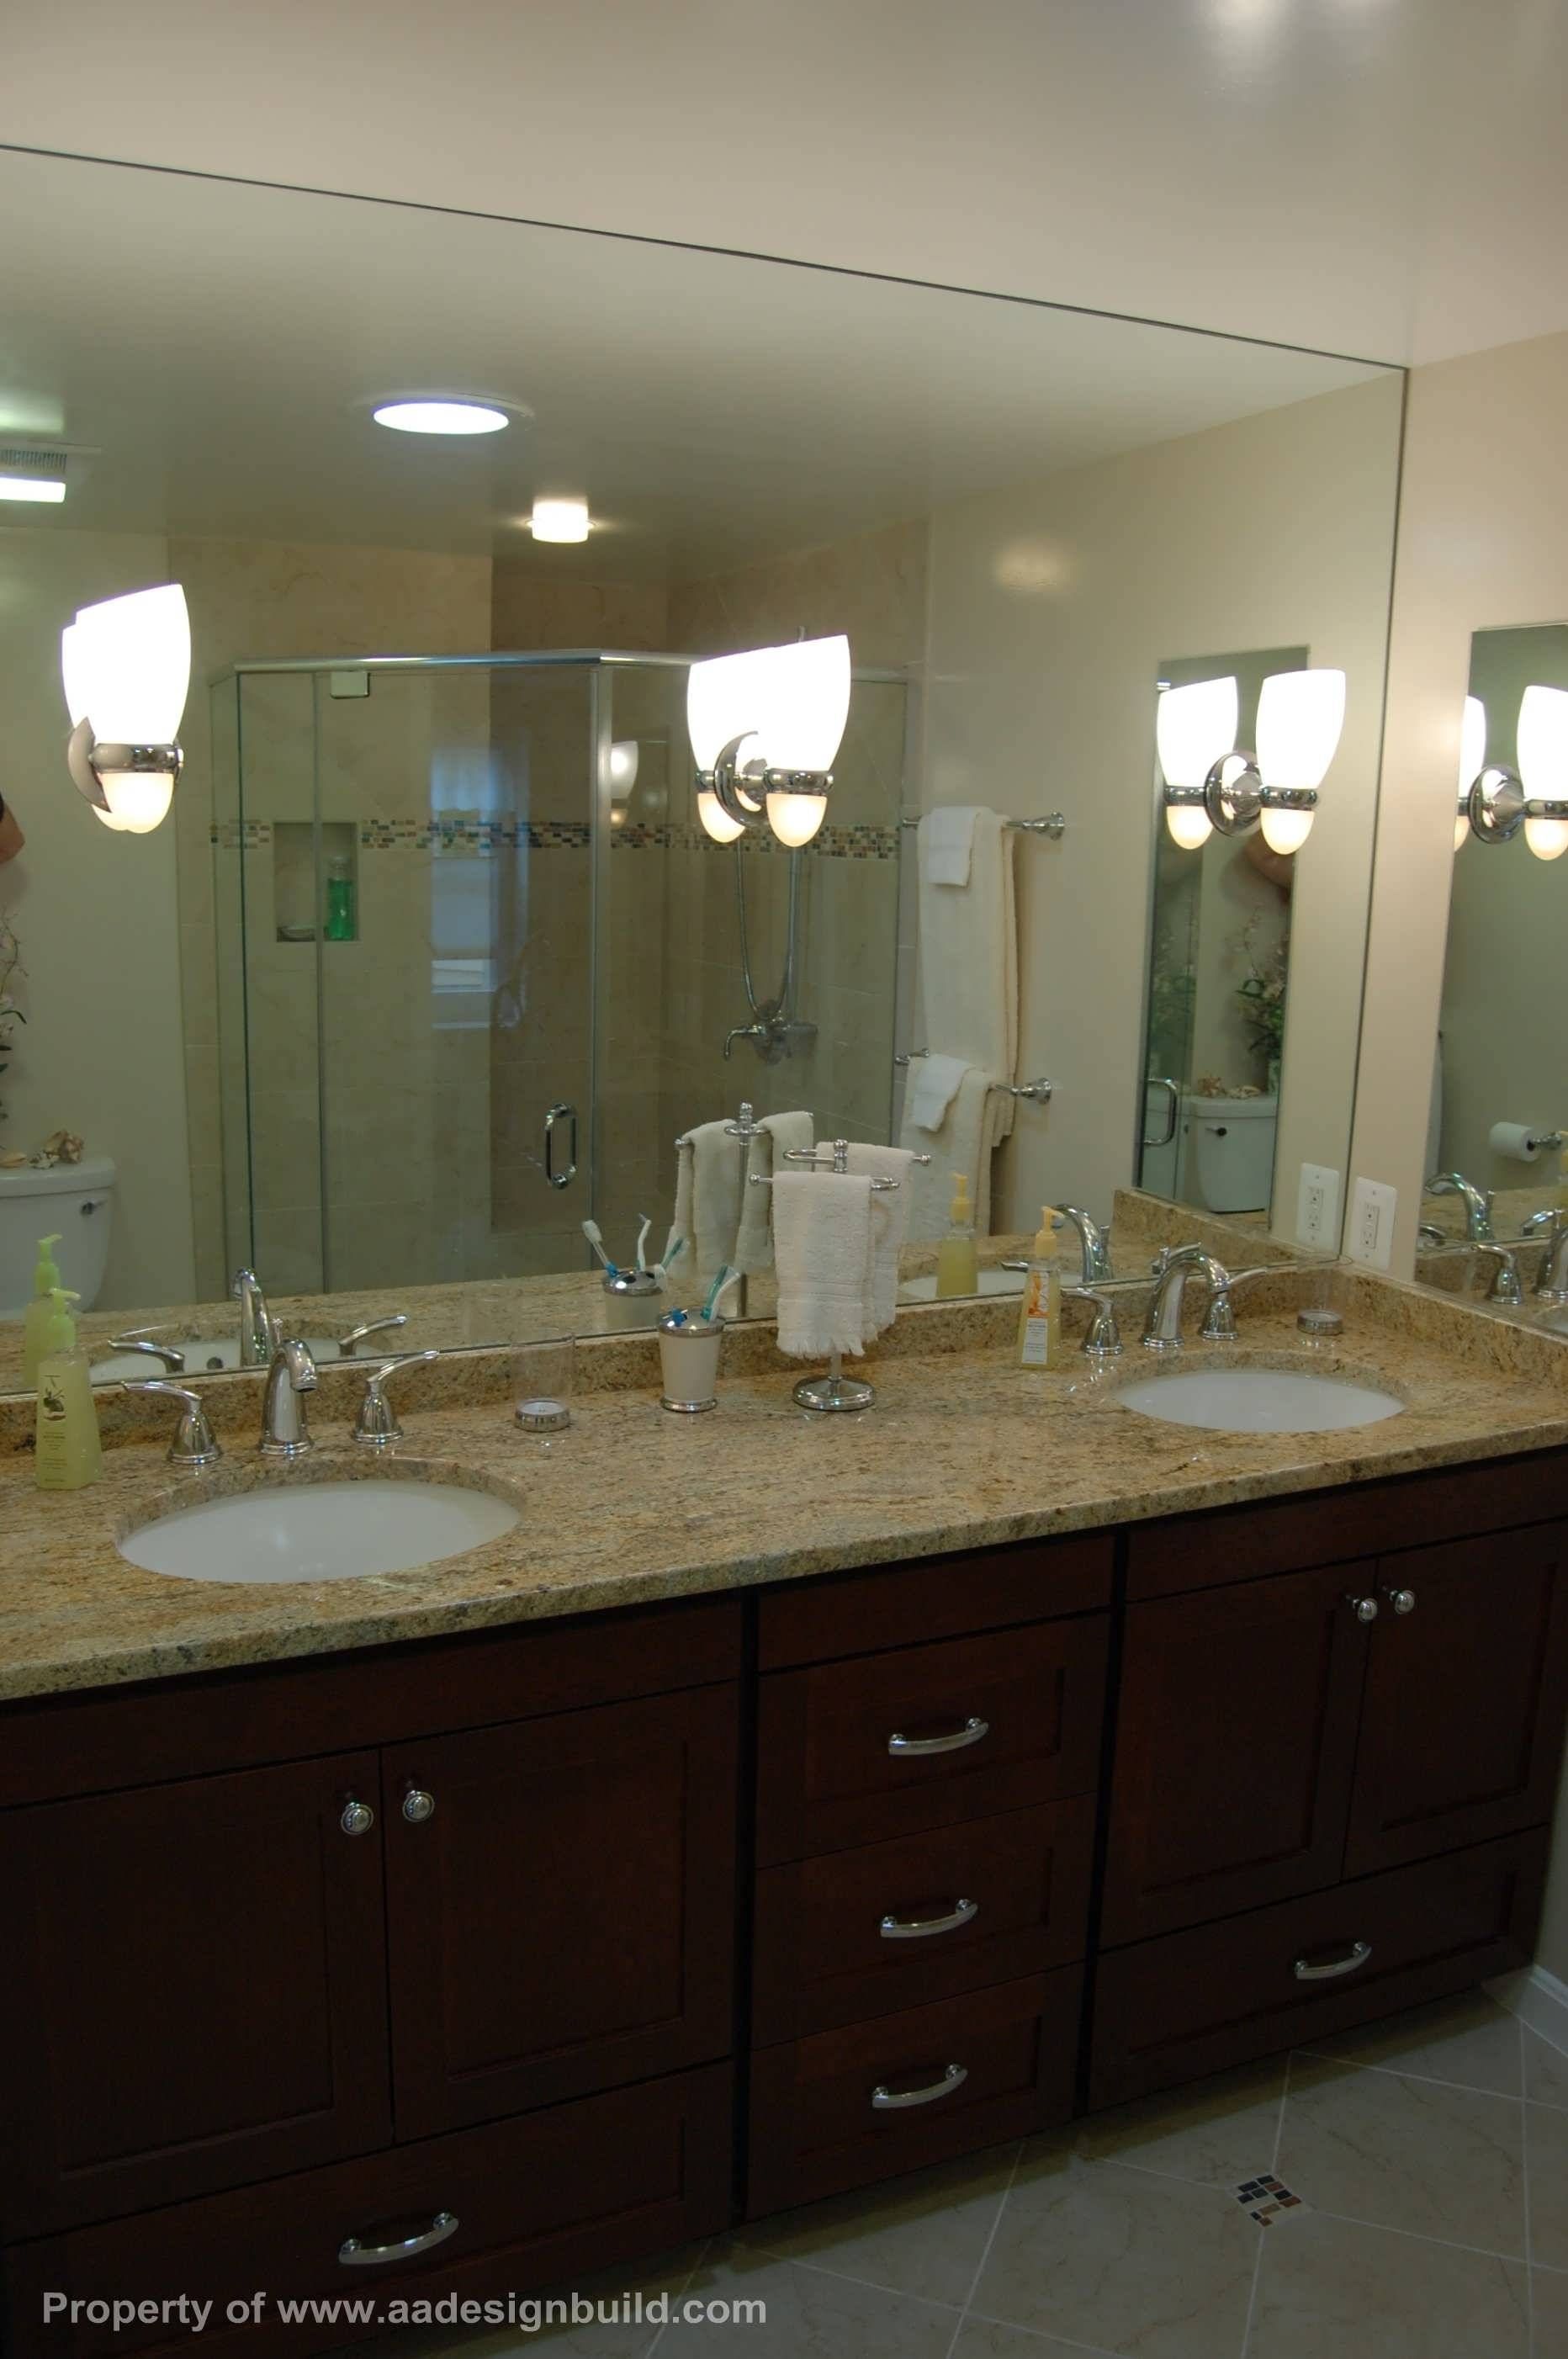 Bathroom : Illuminated Bathroom Mirrors Funky Bathroom Mirrors For Unusual Large Mirrors (View 19 of 25)